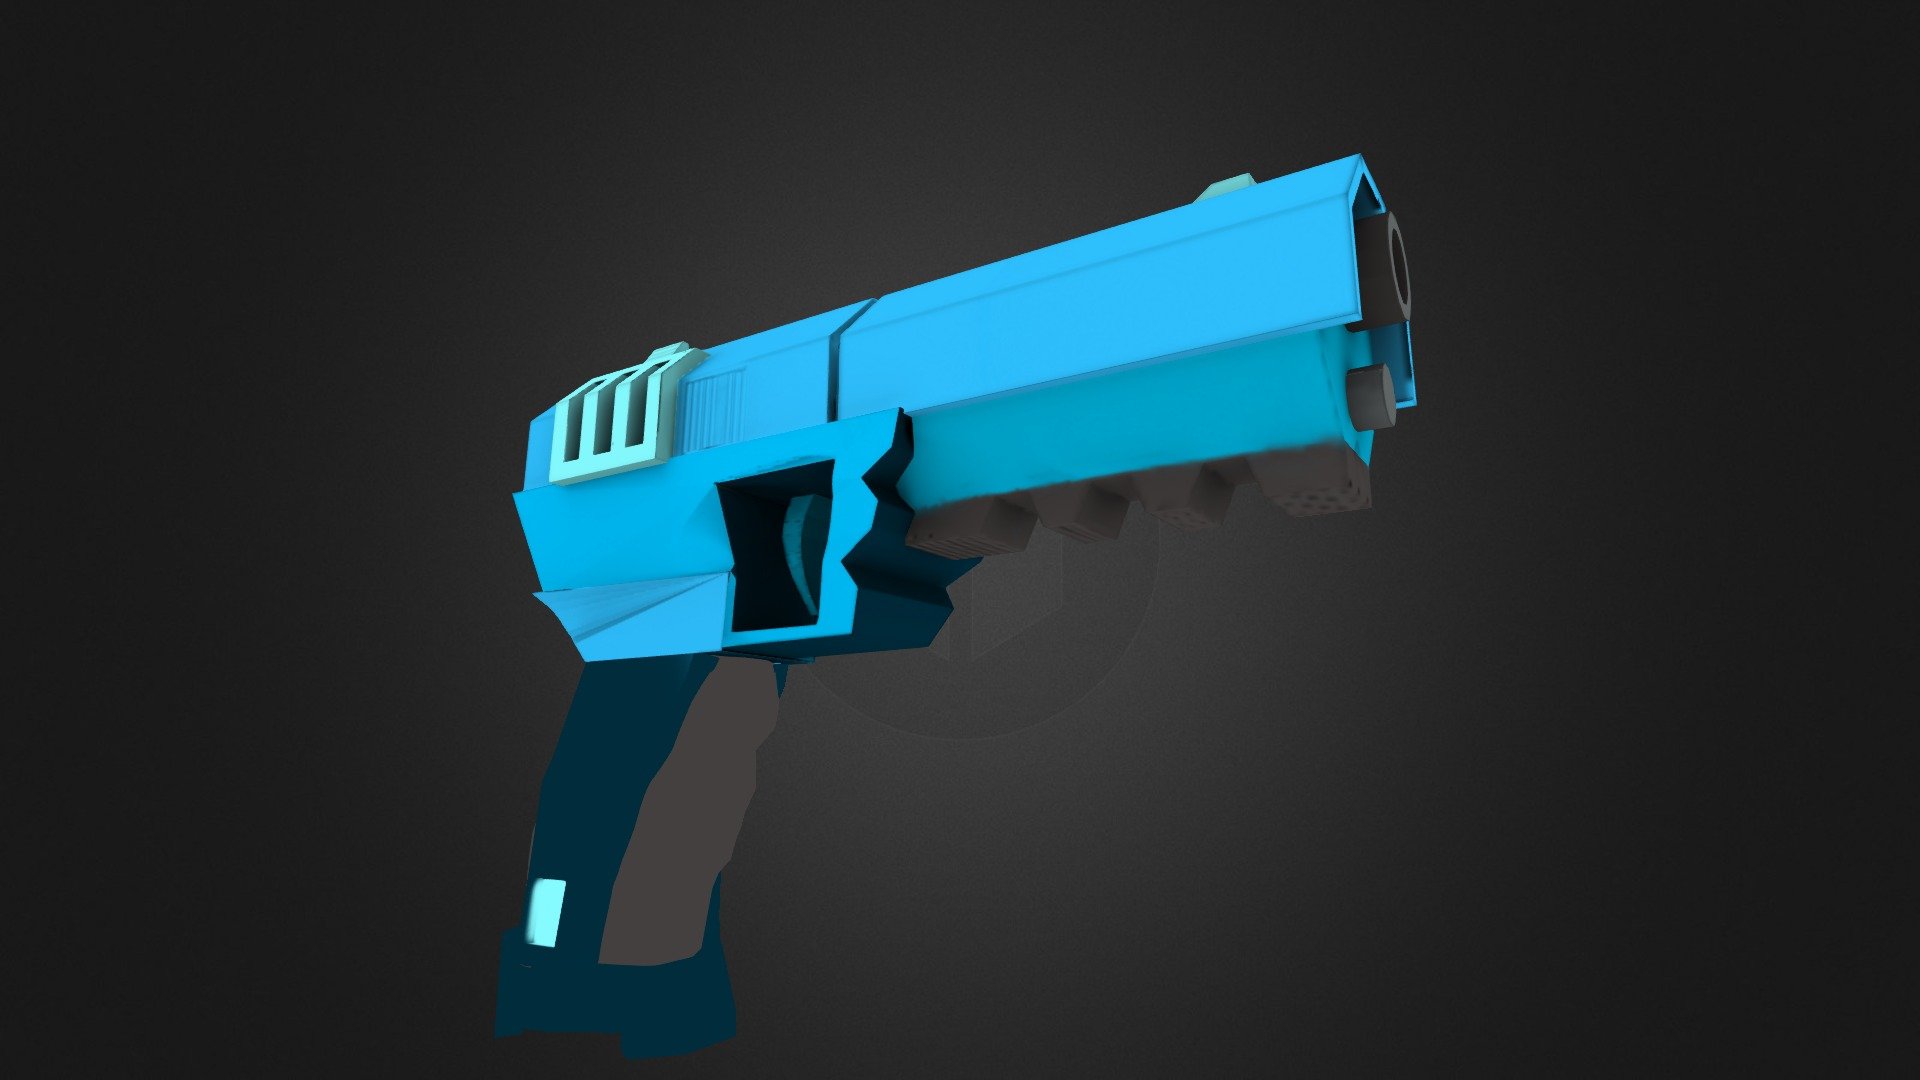 Pistol Final Textured- Not proper - 3D model by PhilipKOng [838fc94 ...